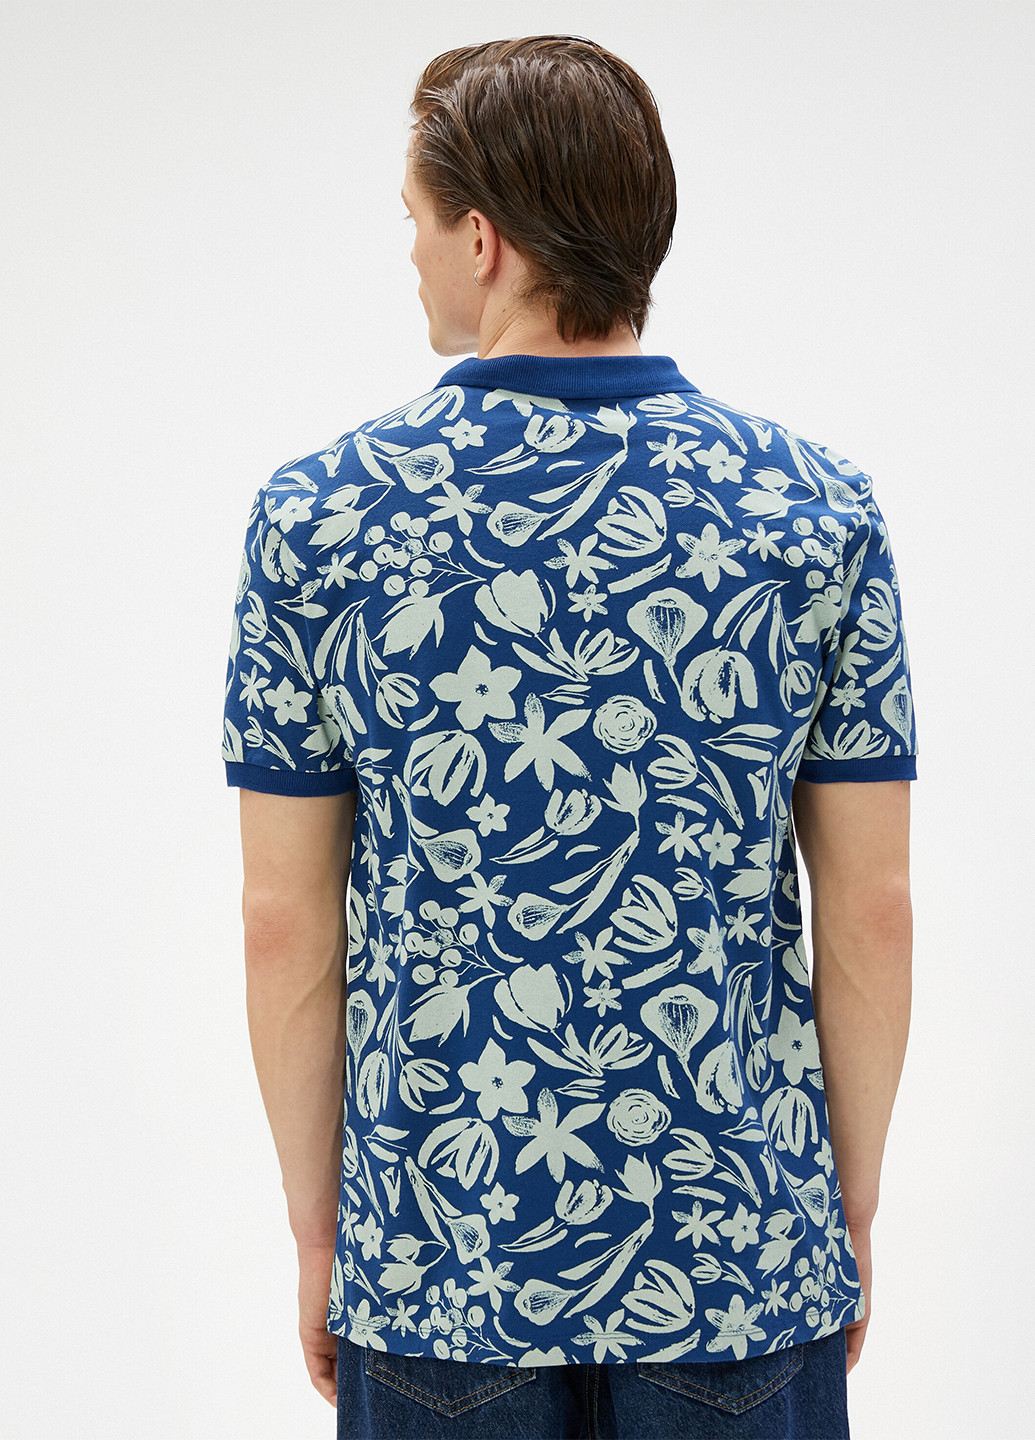 Синяя футболка-поло для мужчин KOTON с цветочным принтом